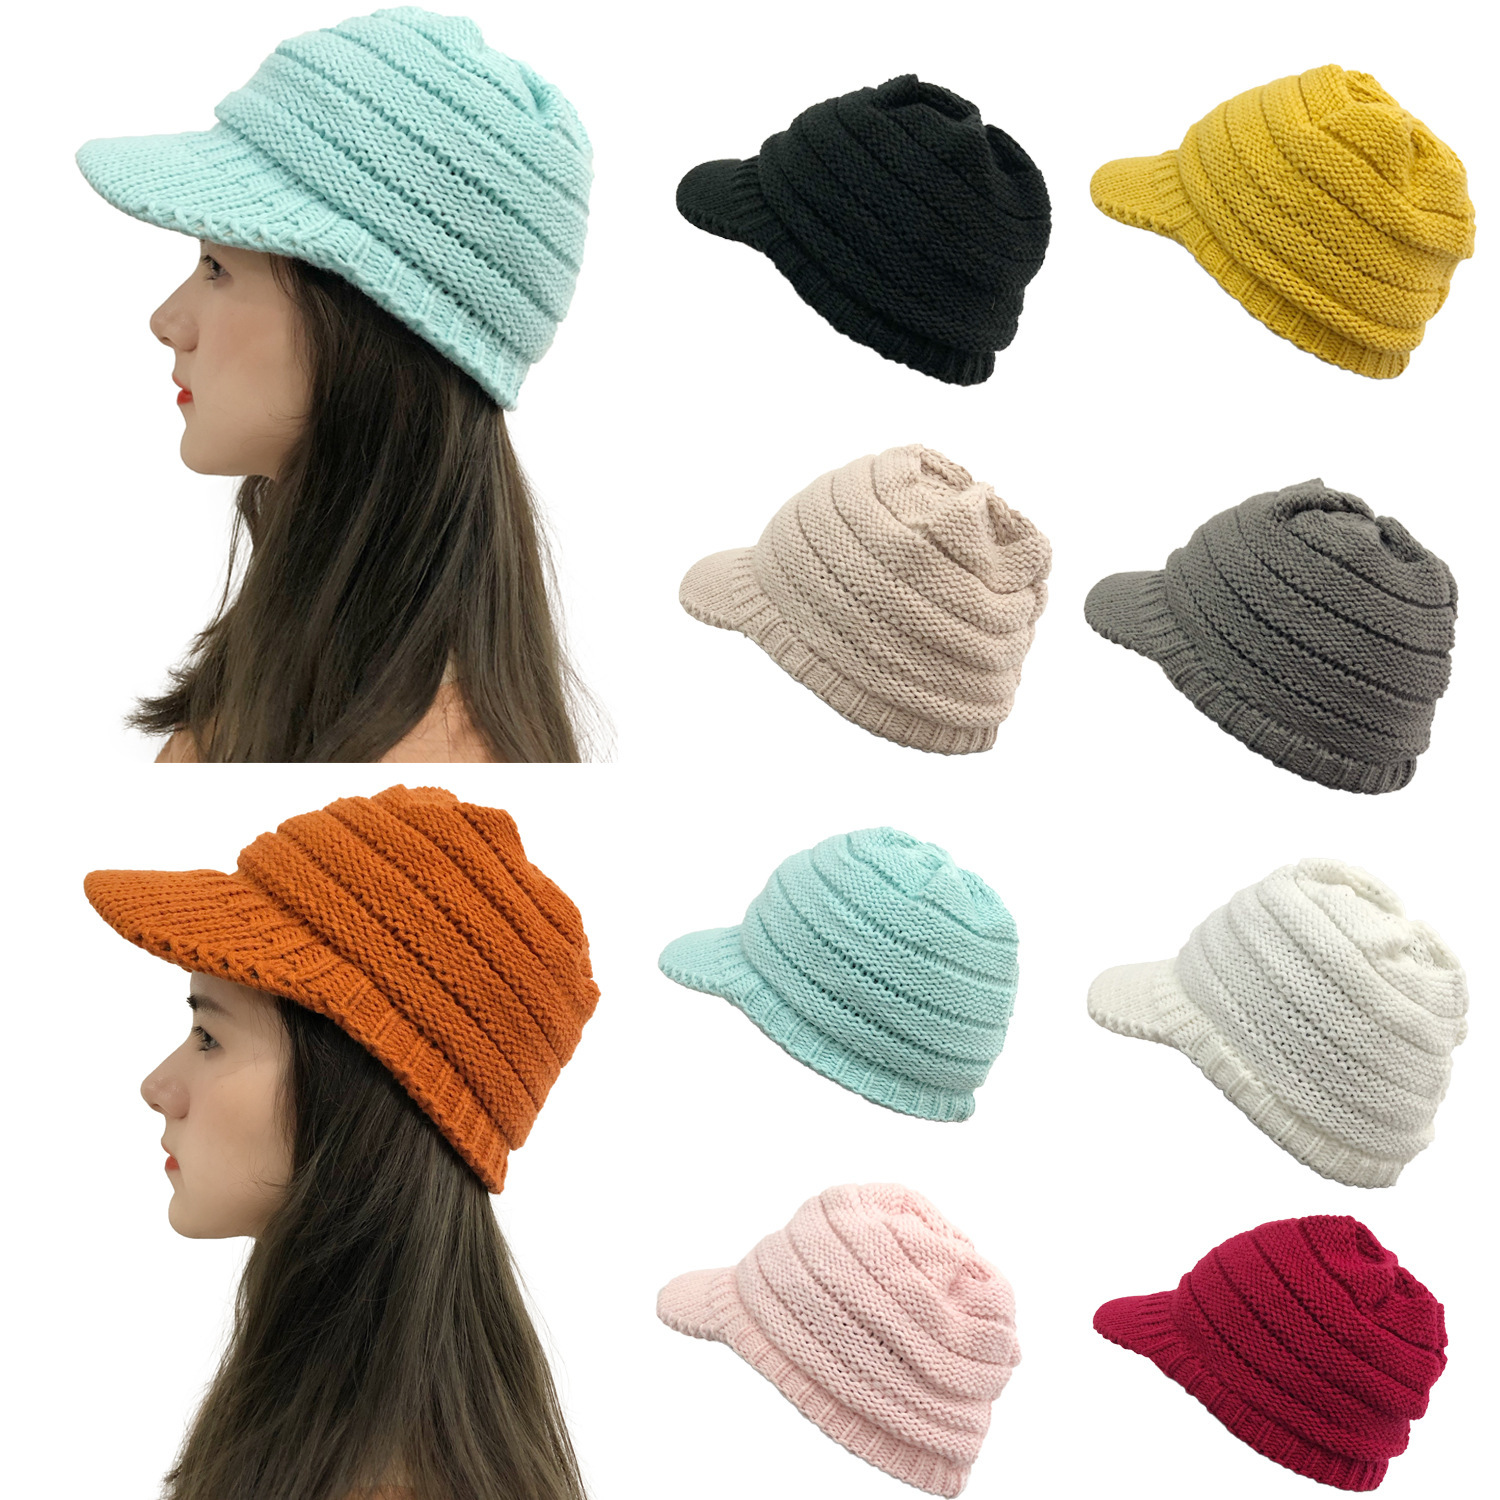 2020新款冬季户外女士滑雪鸭舌毛线帽成人防寒保暖护耳针织帽子